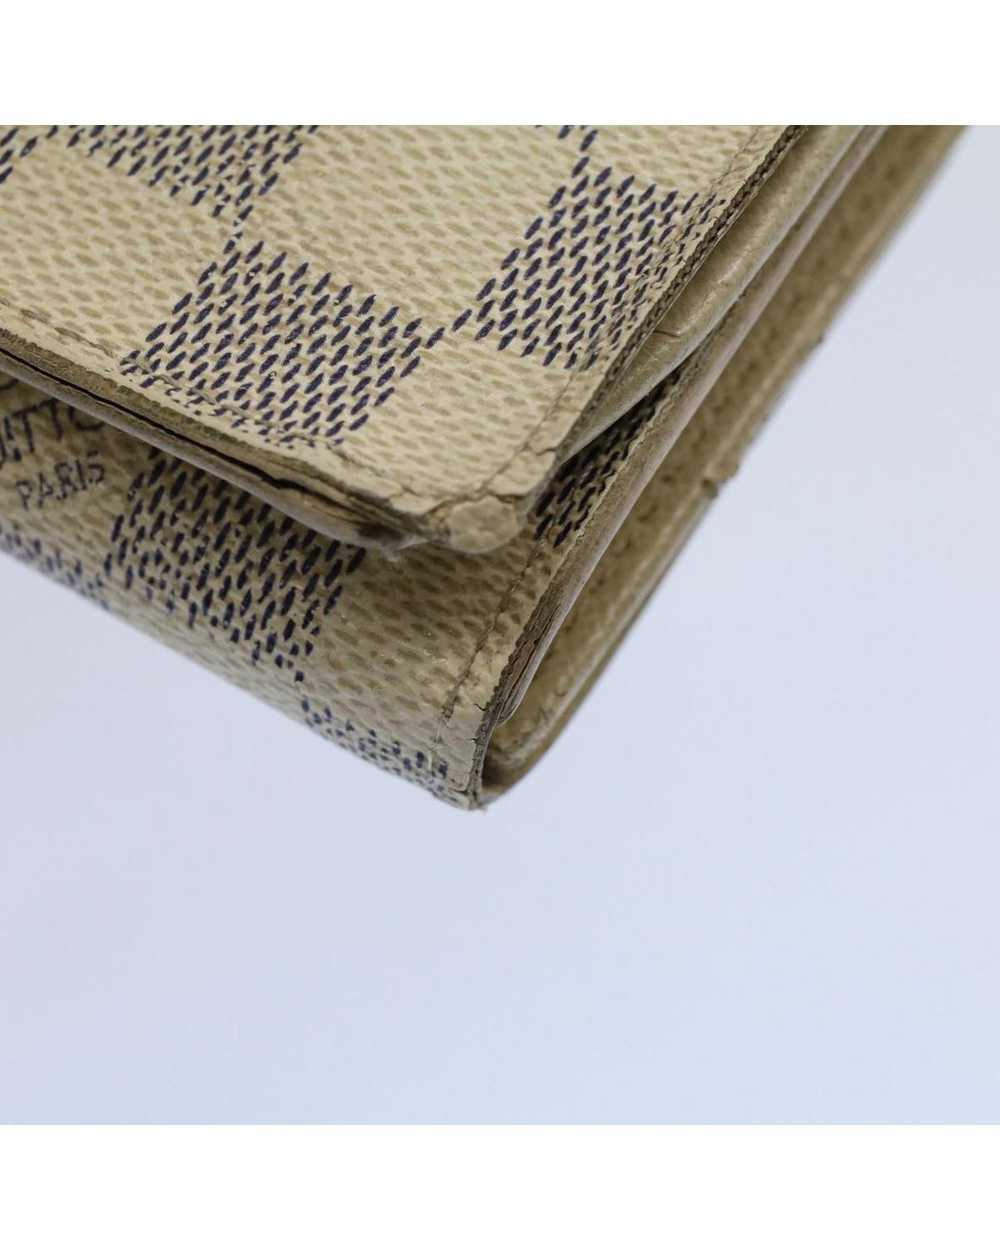 Louis Vuitton Damier Azur Wallet with Clasp Button - image 7